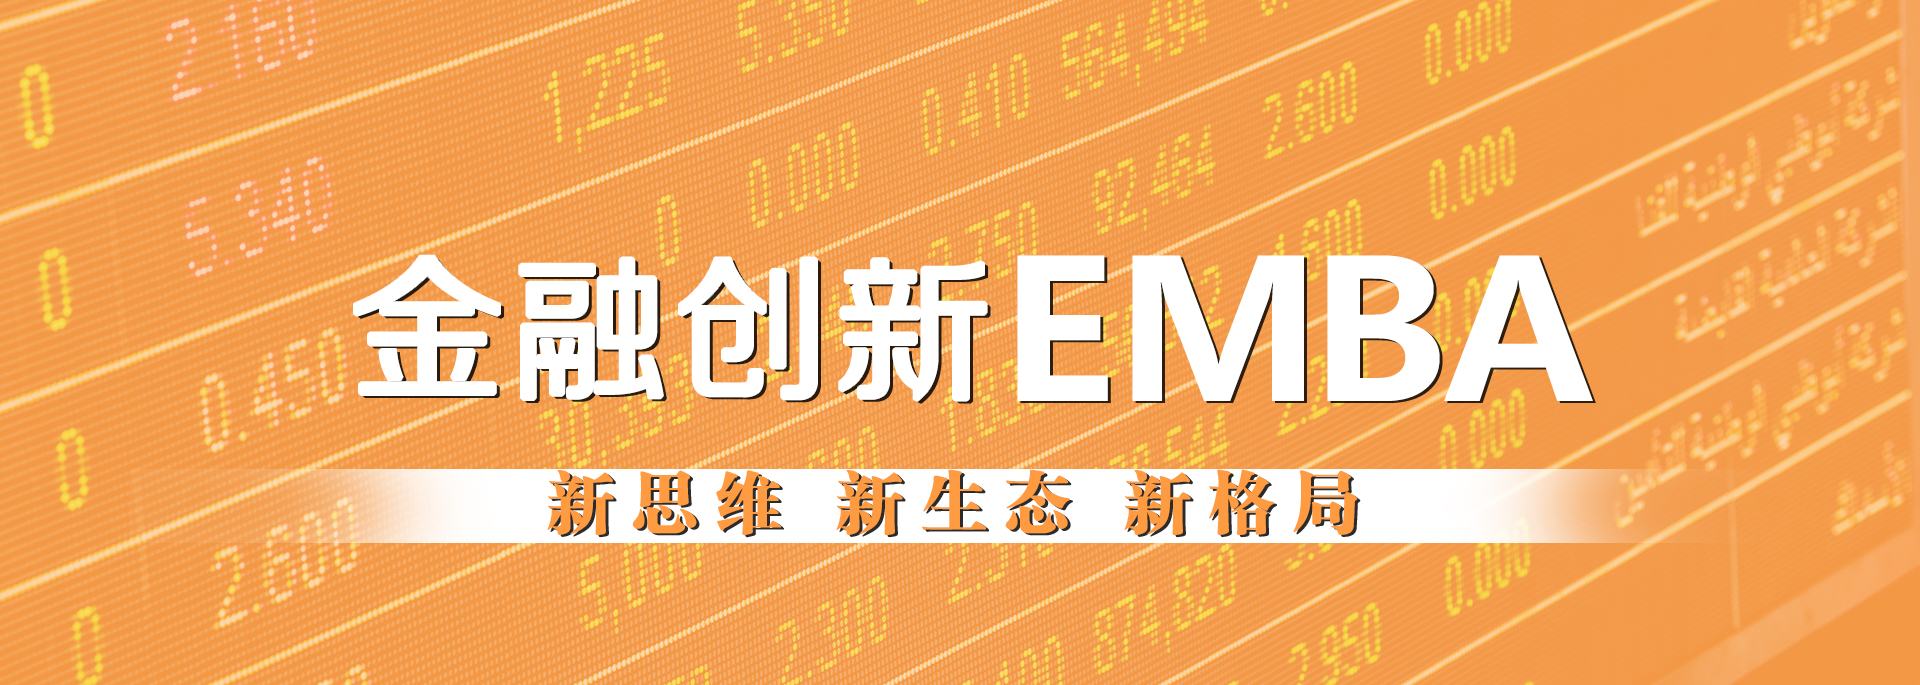 金融创新EMBA